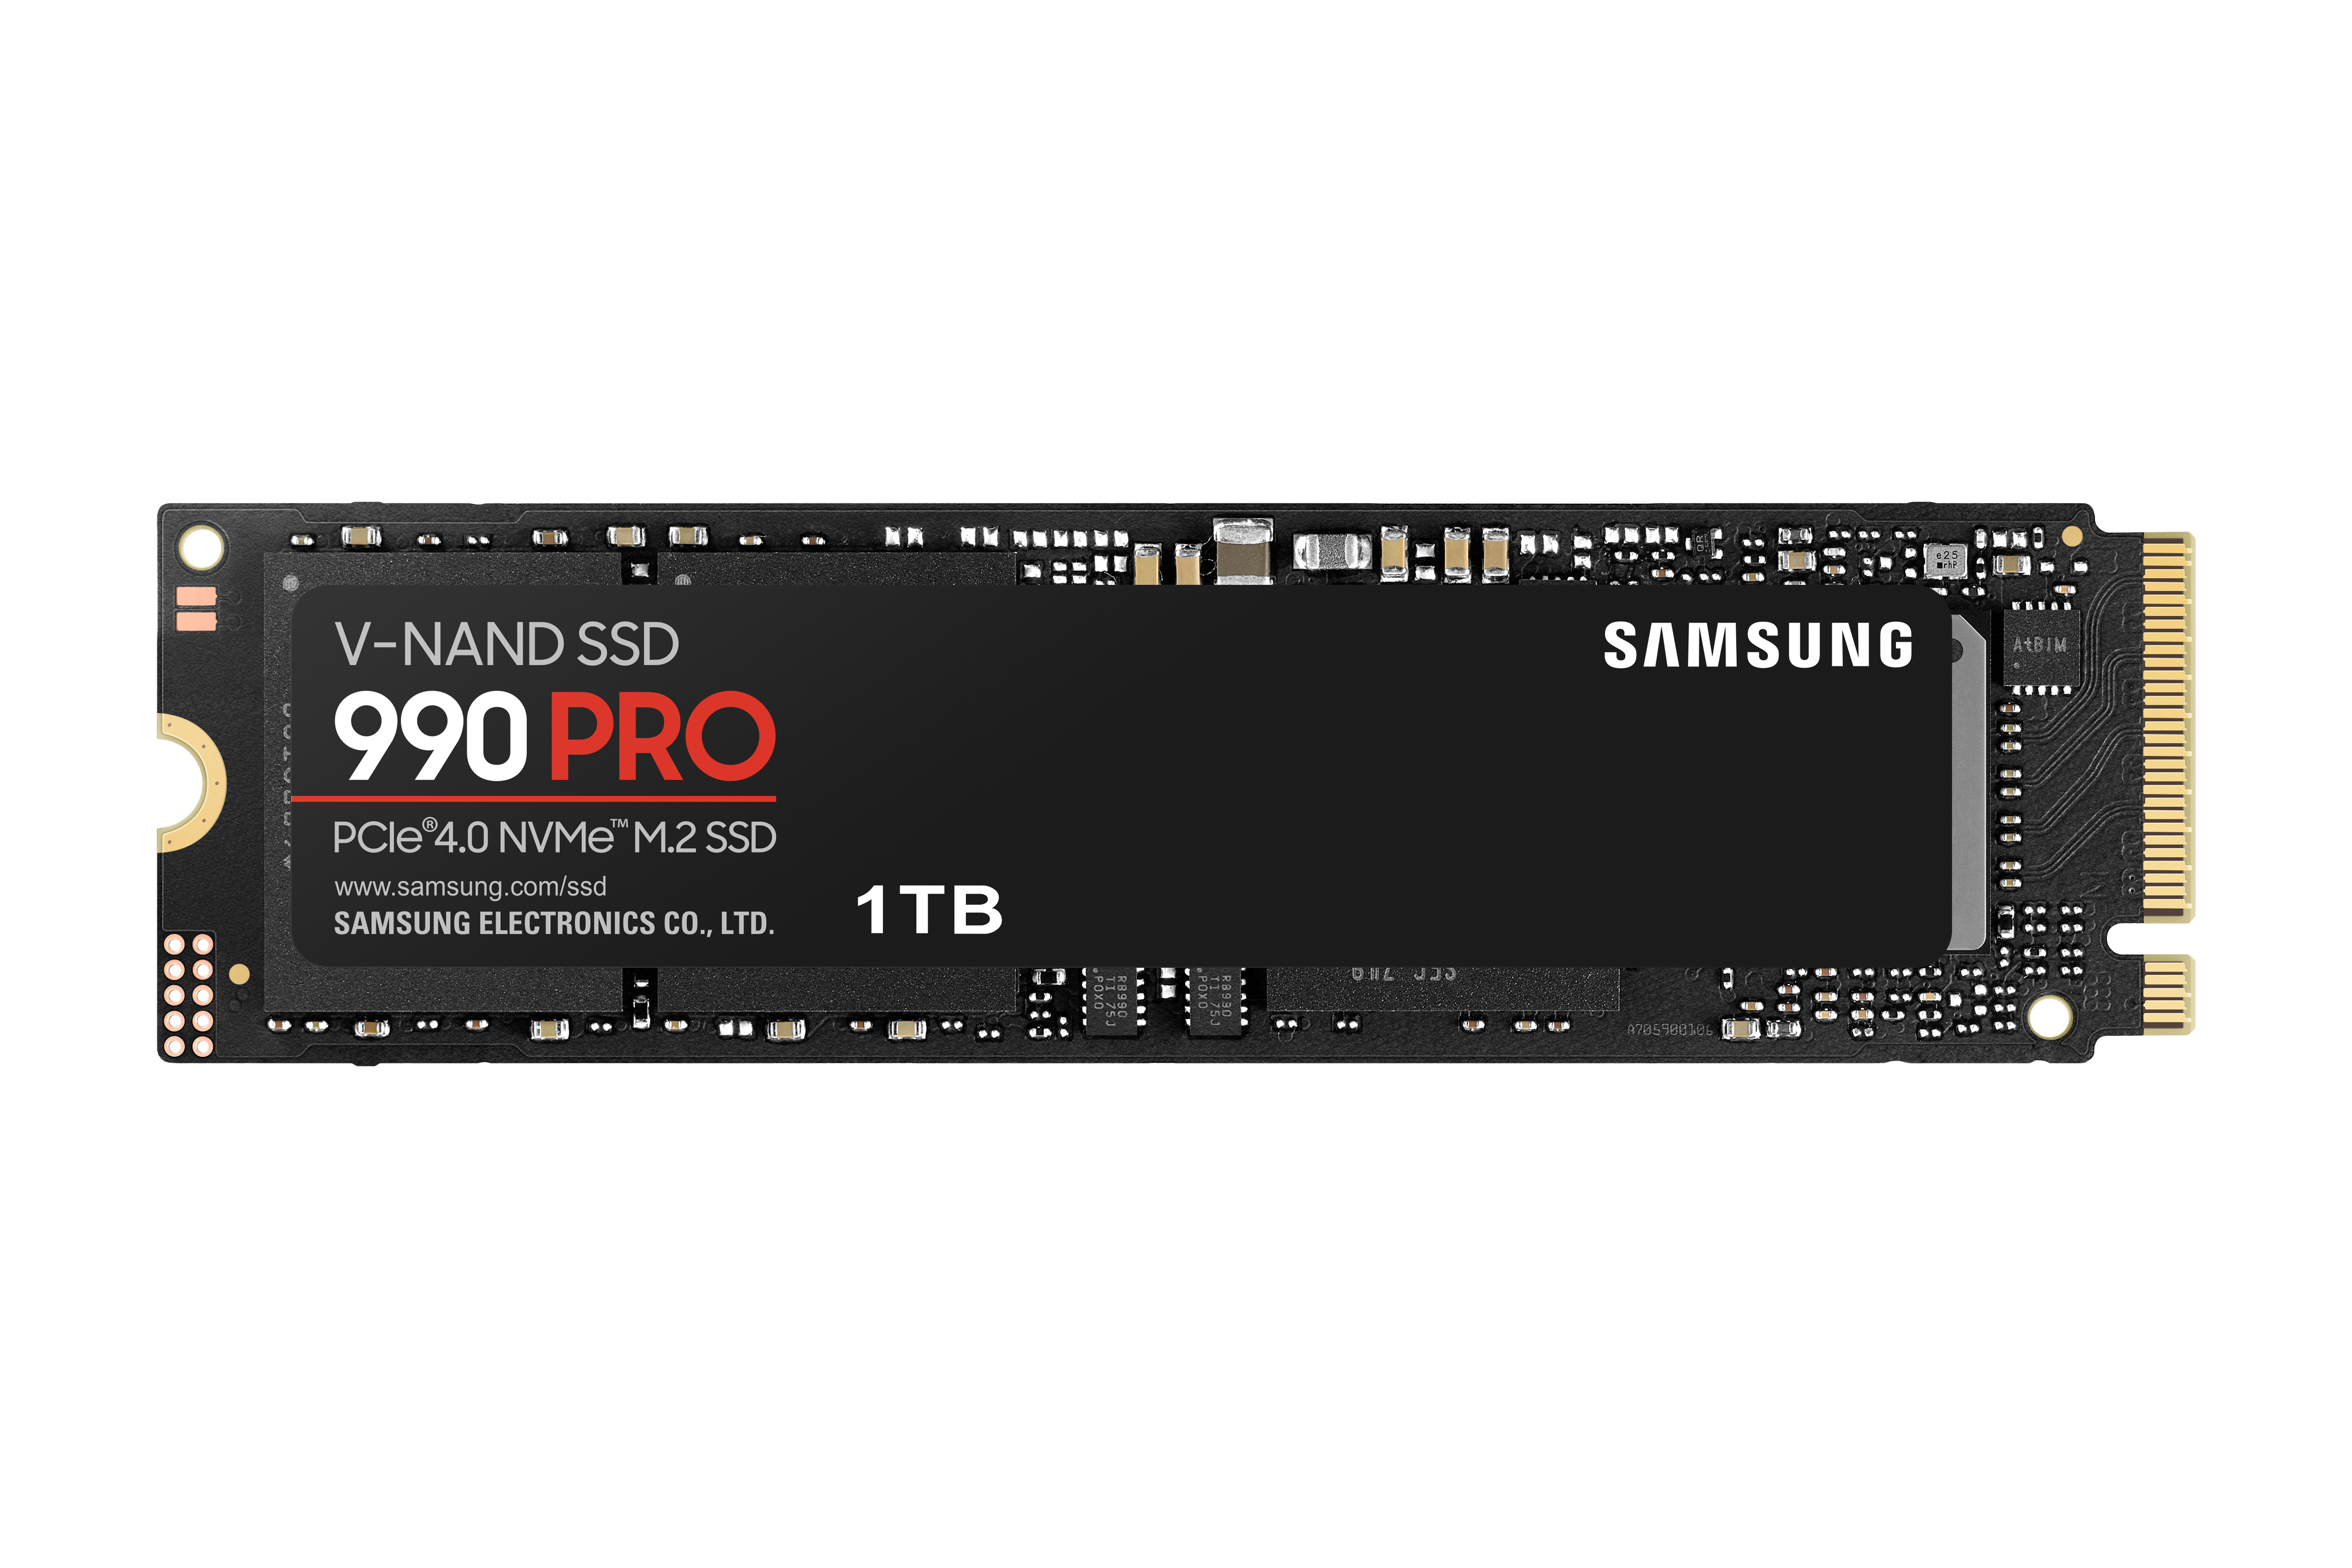 SSD M.2 1TB PCIE 4.0 990 PRO NVME 2.0